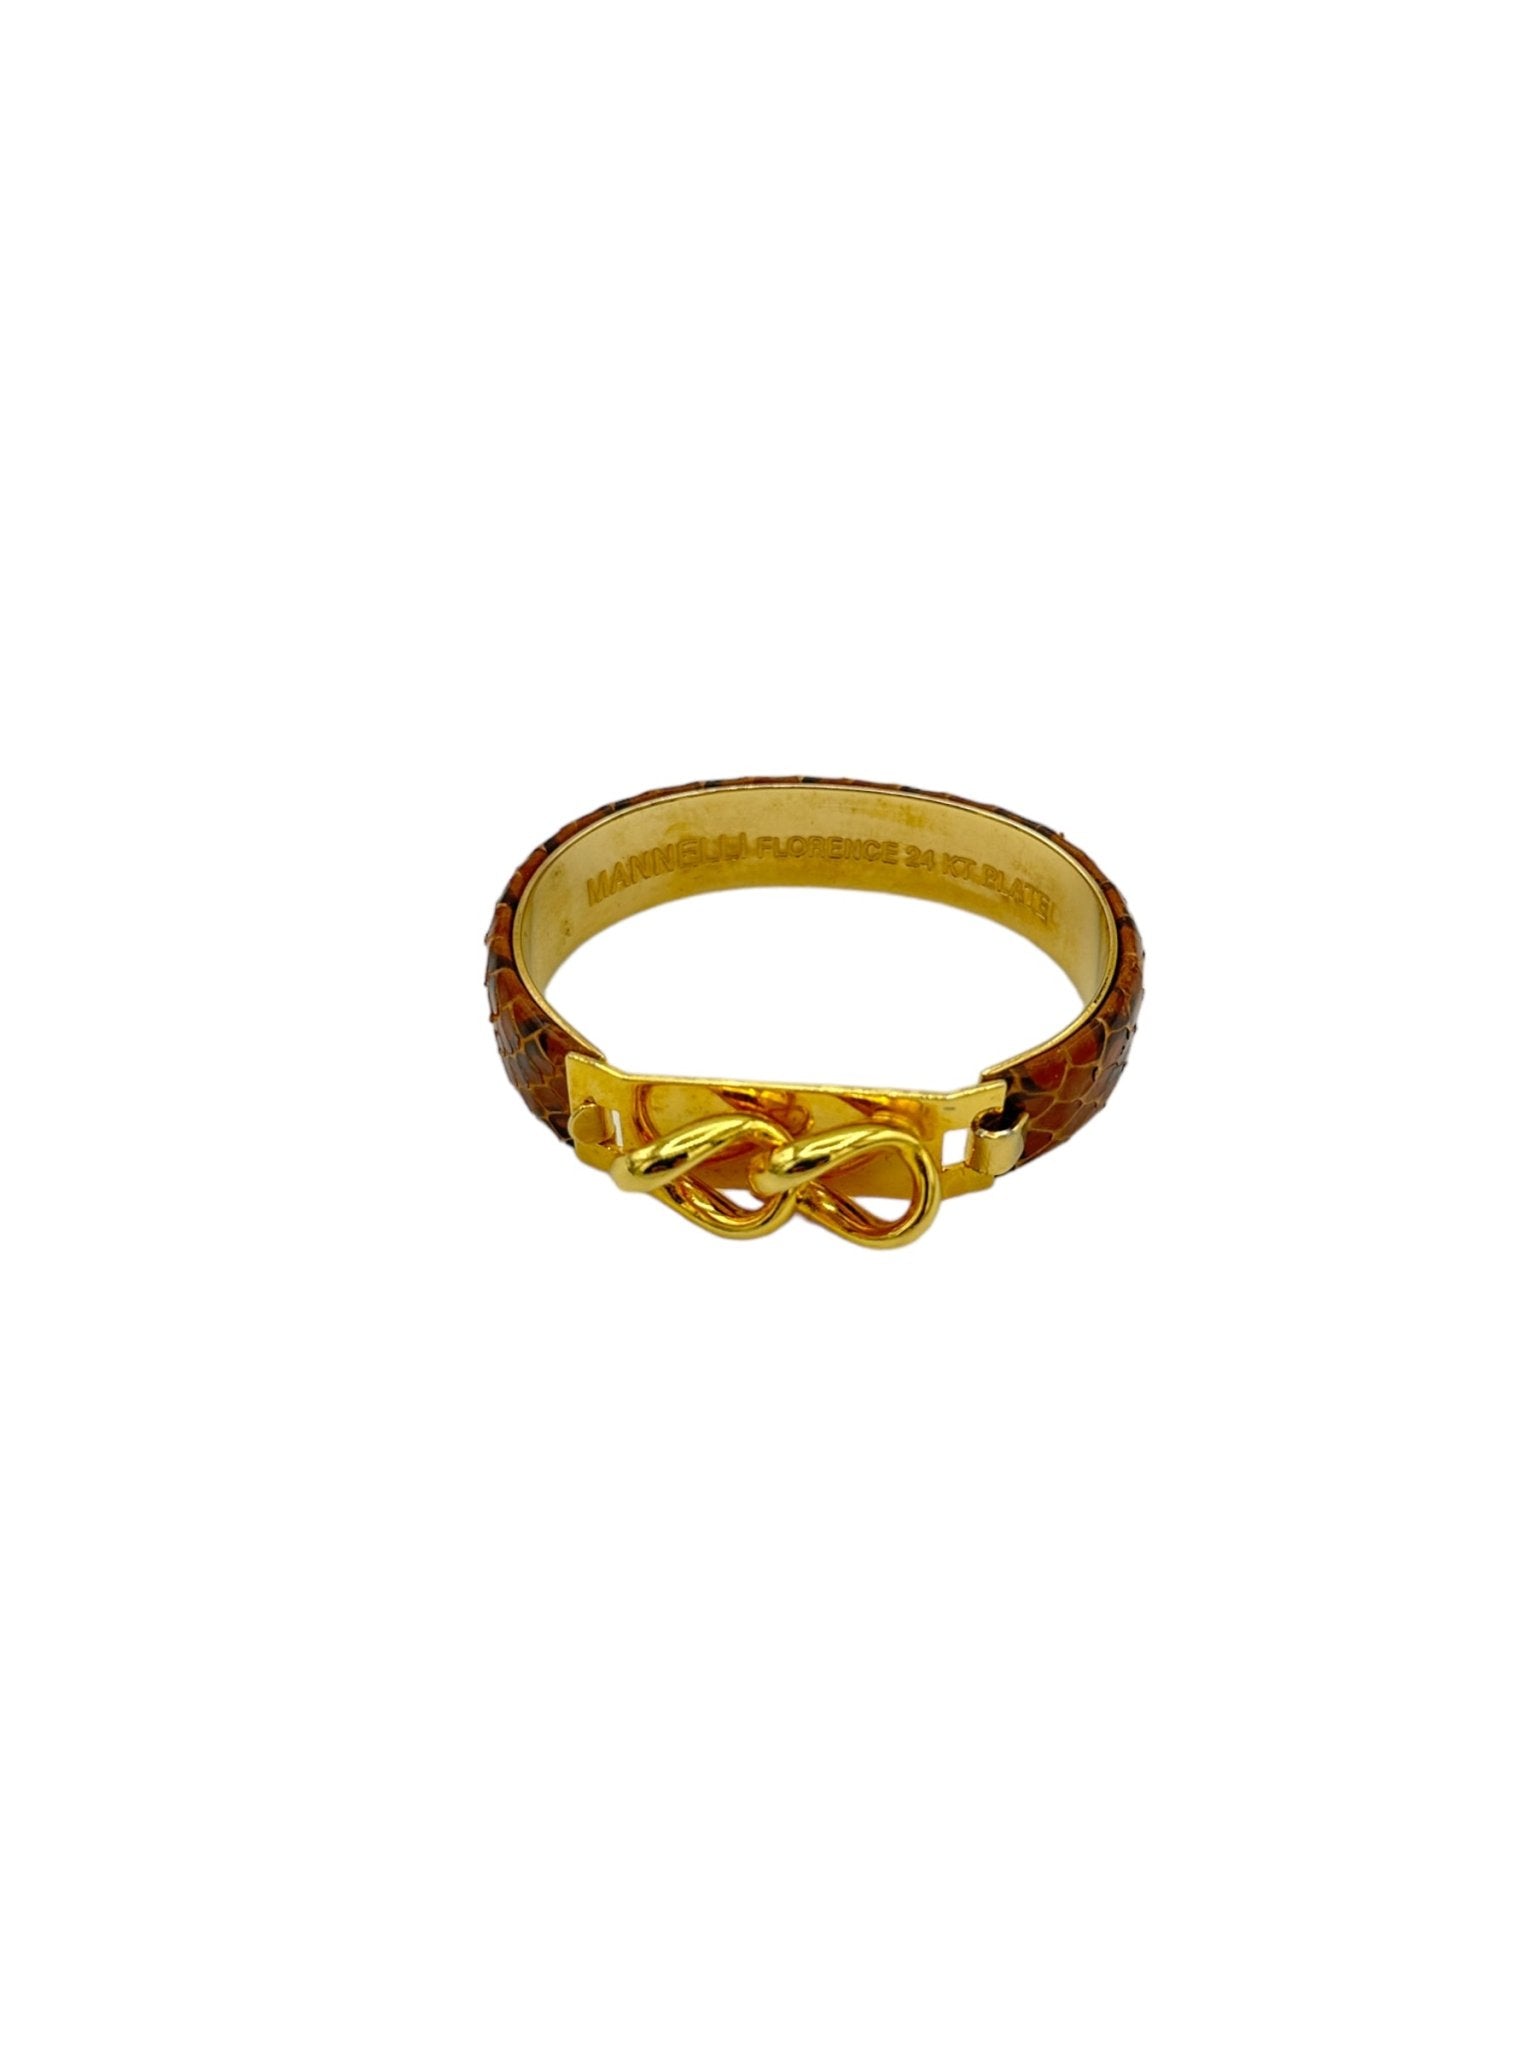 9999 Solid 24k Gold Dragon Scale Bracelet 129.79 Gram CUSTOM | eBay